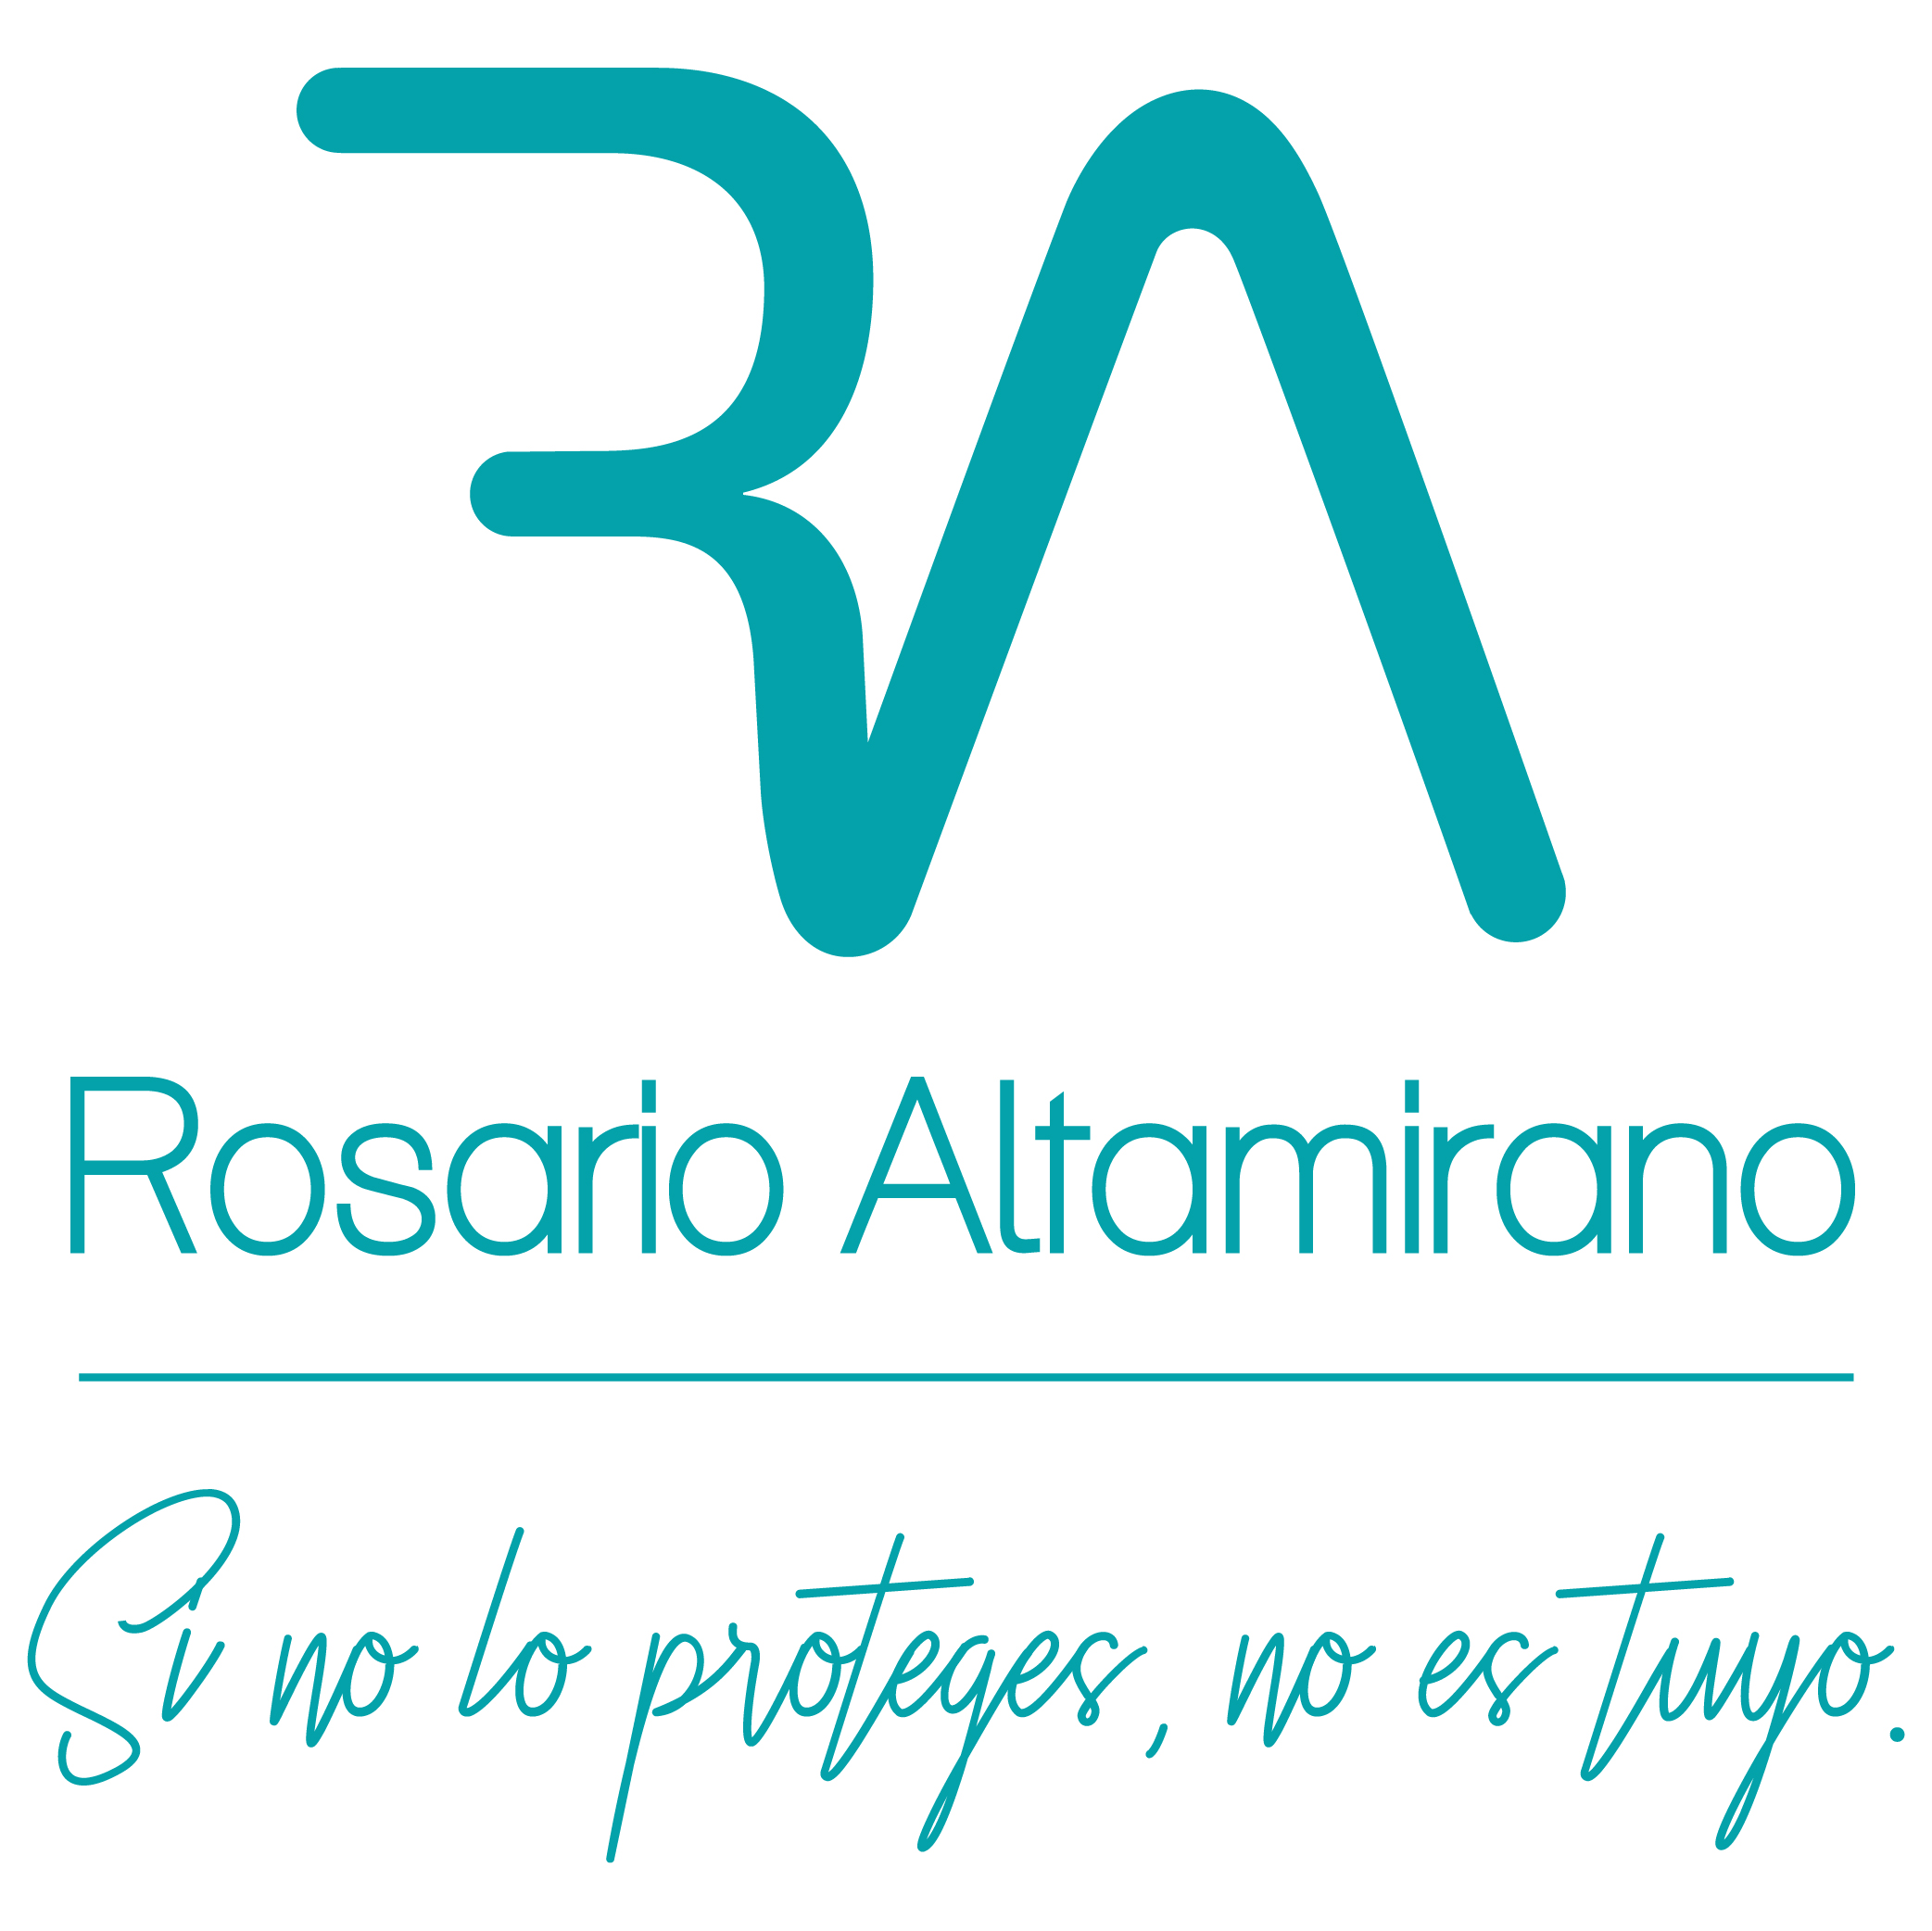 Rosario Altamirano